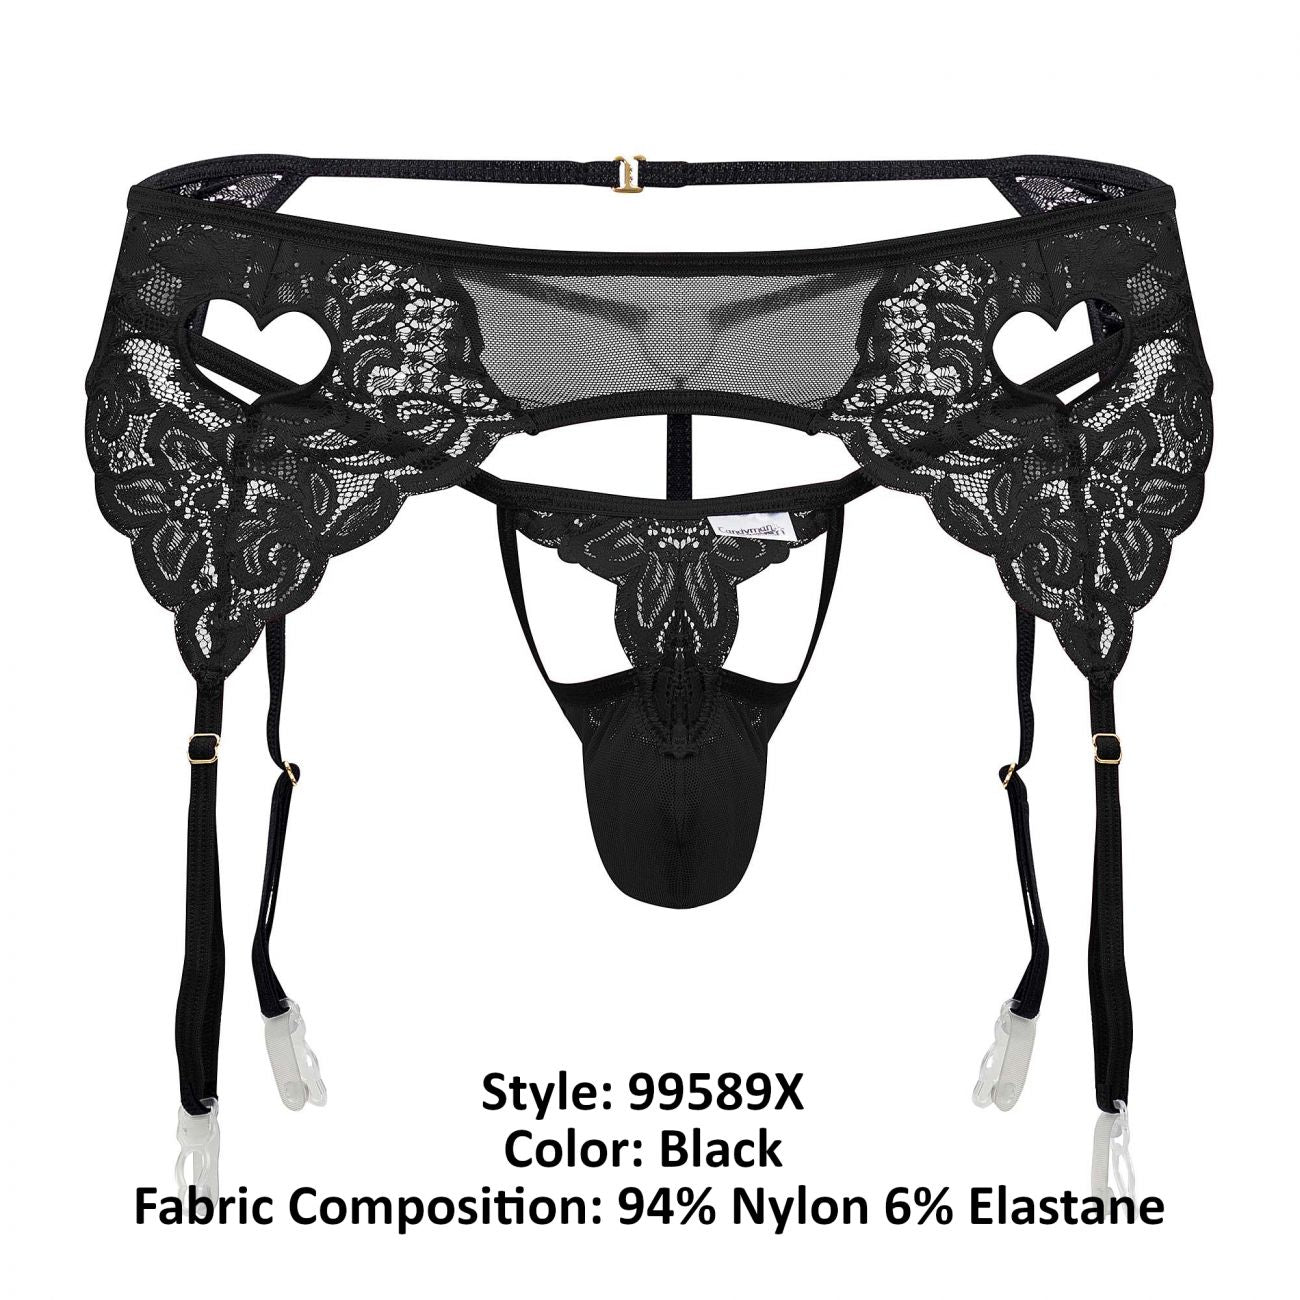 JCSTK - CandyMan 99589X Lace Garter G-String Black Plus Sizes